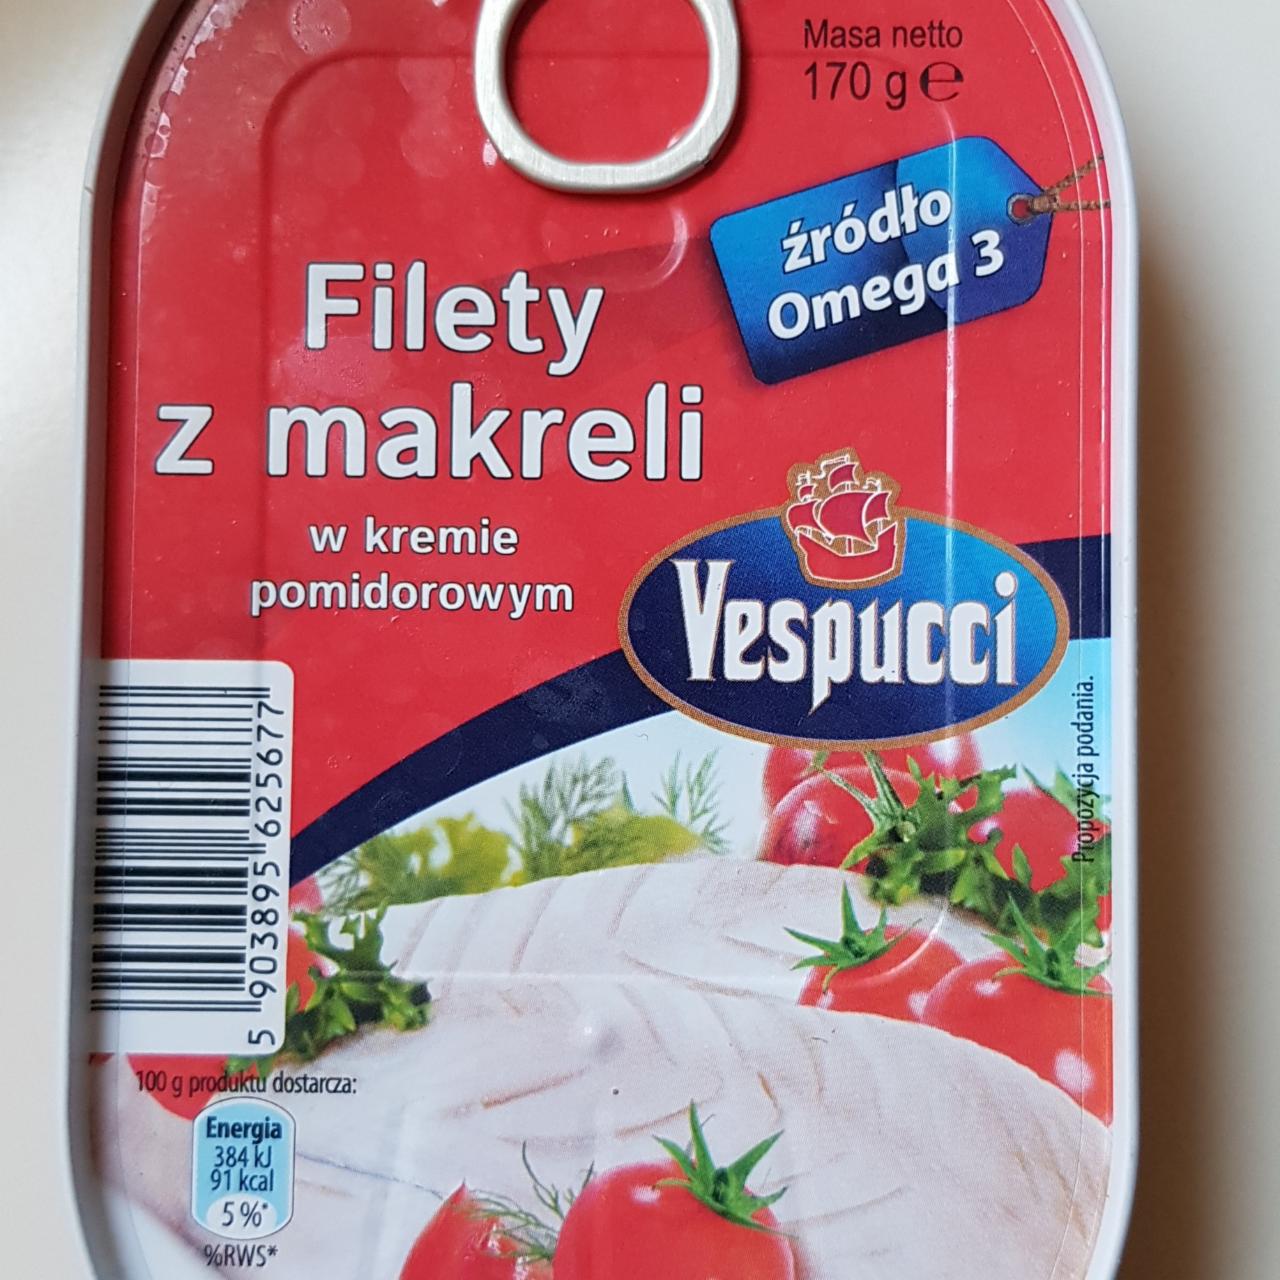 Zdjęcia - Filety z makreli w kremie pomidorowym Vespucci